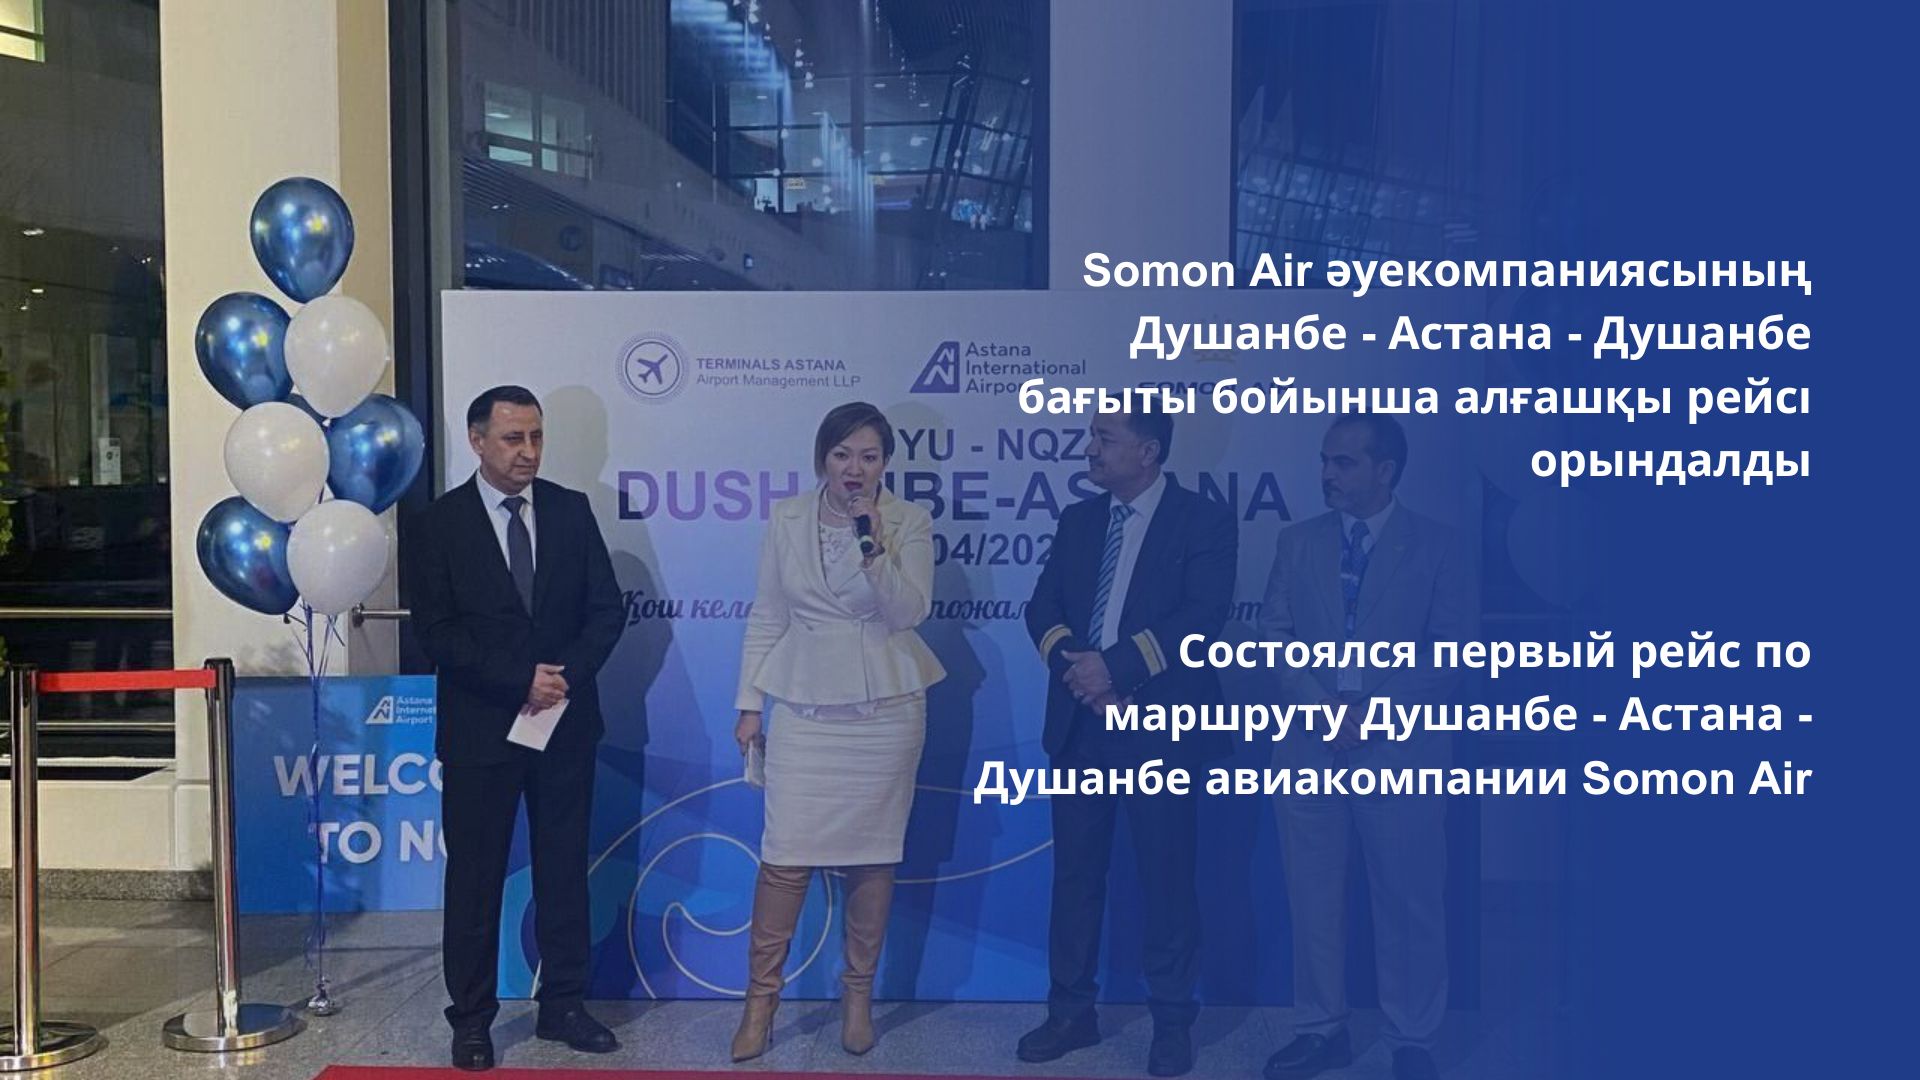 Состоялся первый рейс по маршруту Душанбе - Астана - Душанбе авиакомпании Somon Air